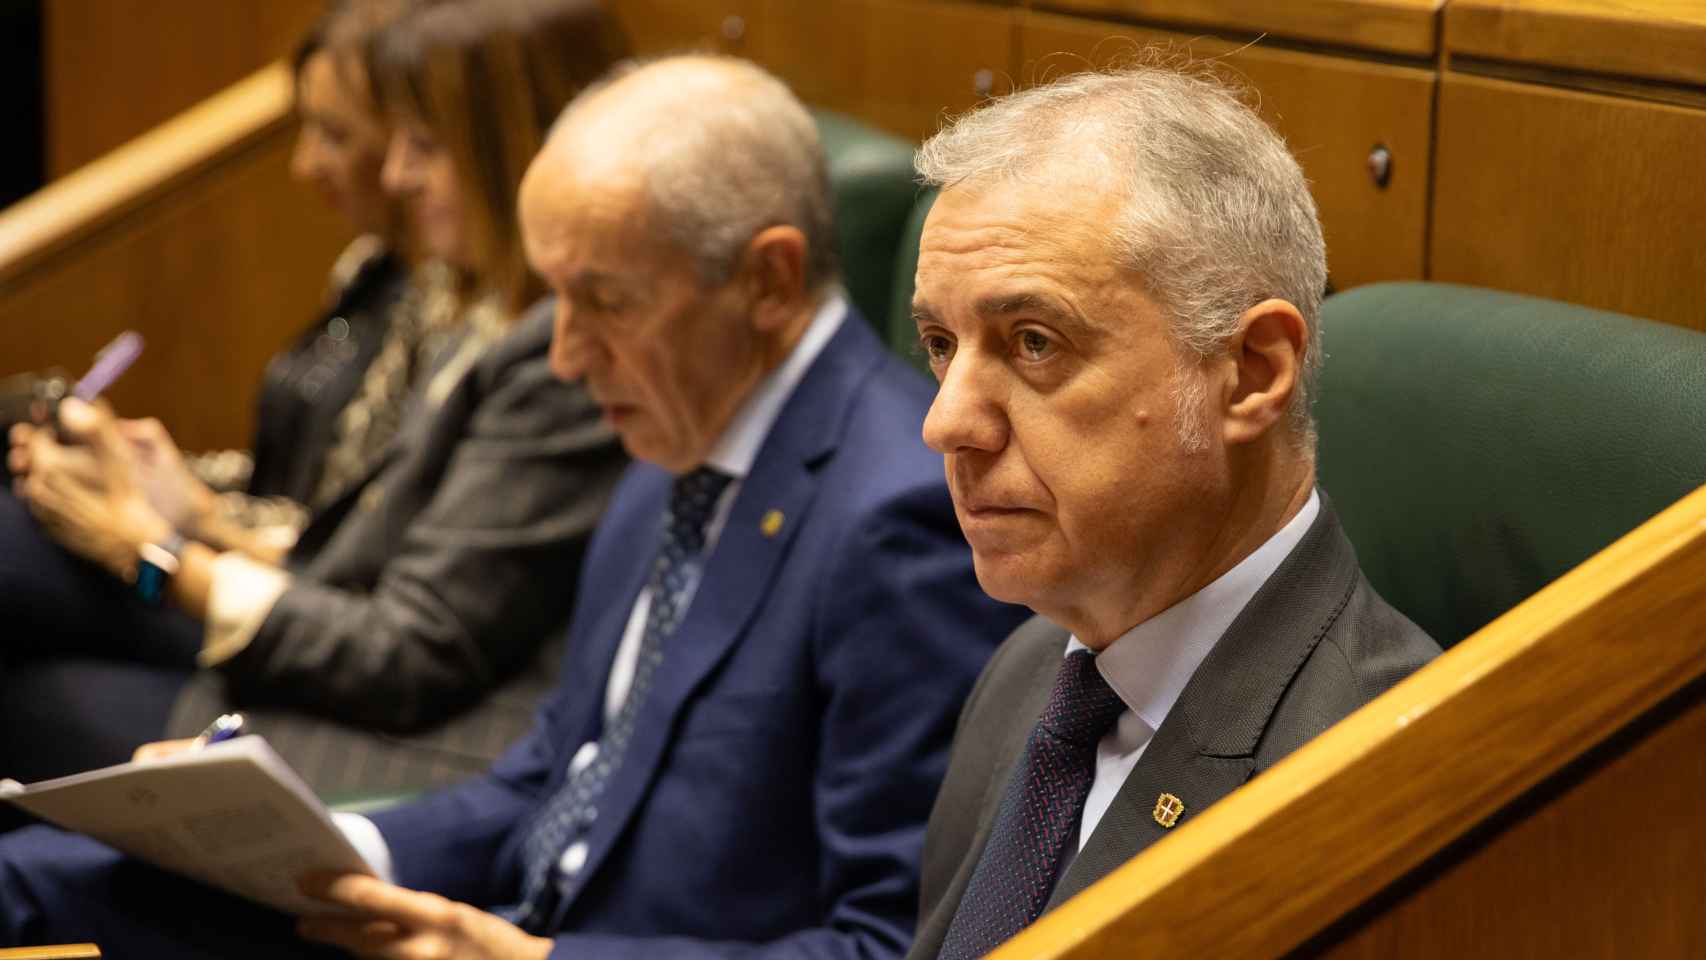 El lehendakari, Iñigo Urkullu, junto al consejero de Seguridad, Josu Erkoreka, en el Parlamento vasco / Legebiltzarra